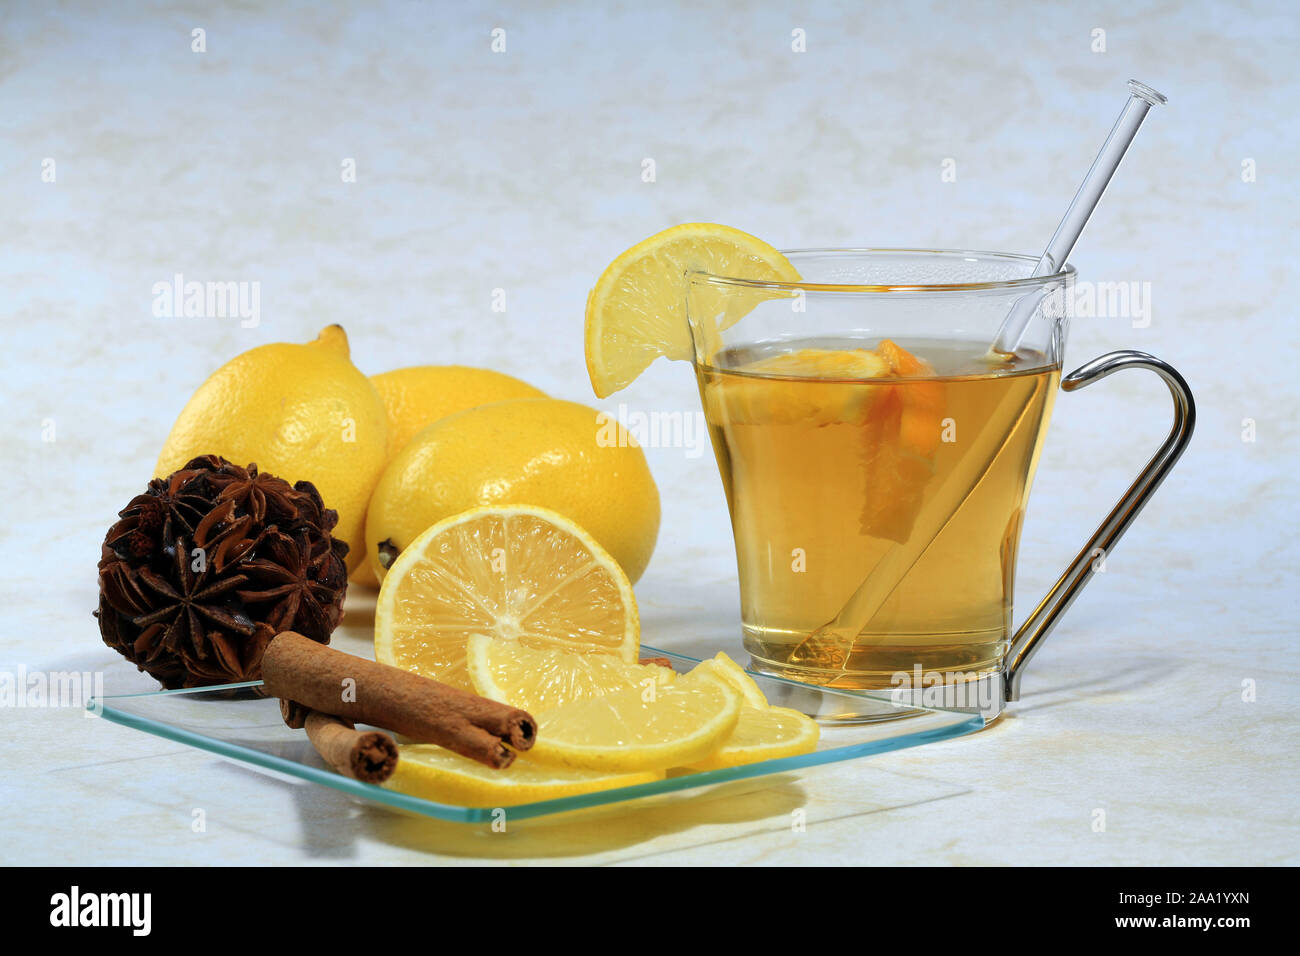 Eine Tasse Tee  mit Zitronen, Nelken  und Zimtstangen auf einem Glasteller / A cup of tea with lemon, cloves and cinnamon sticks on a glas plate Stock Photo